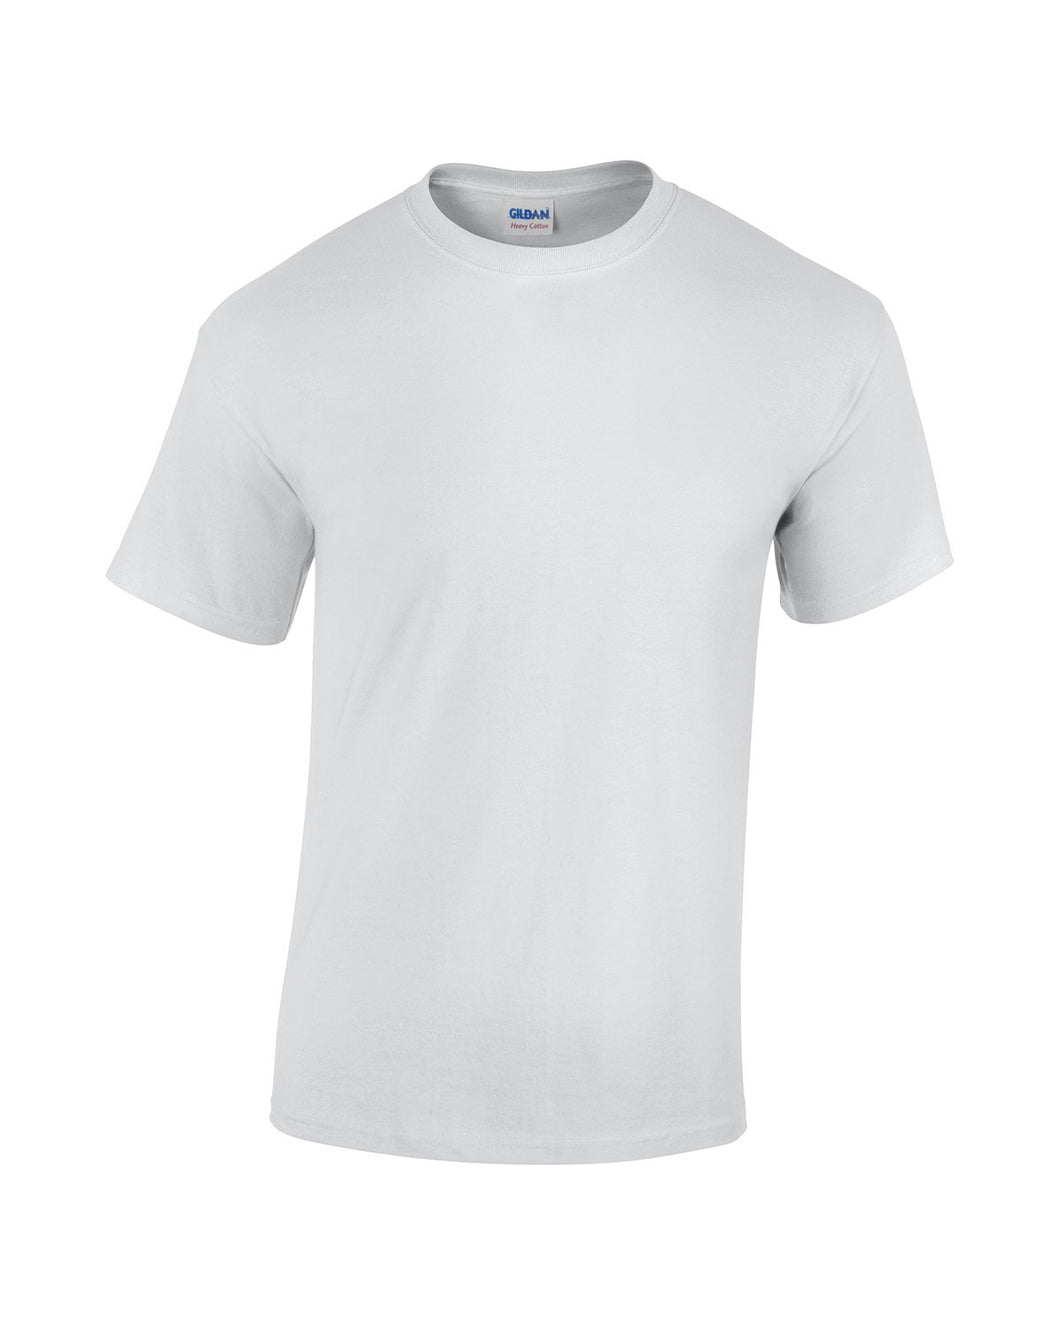 G500 Short Sleeve T Shirt